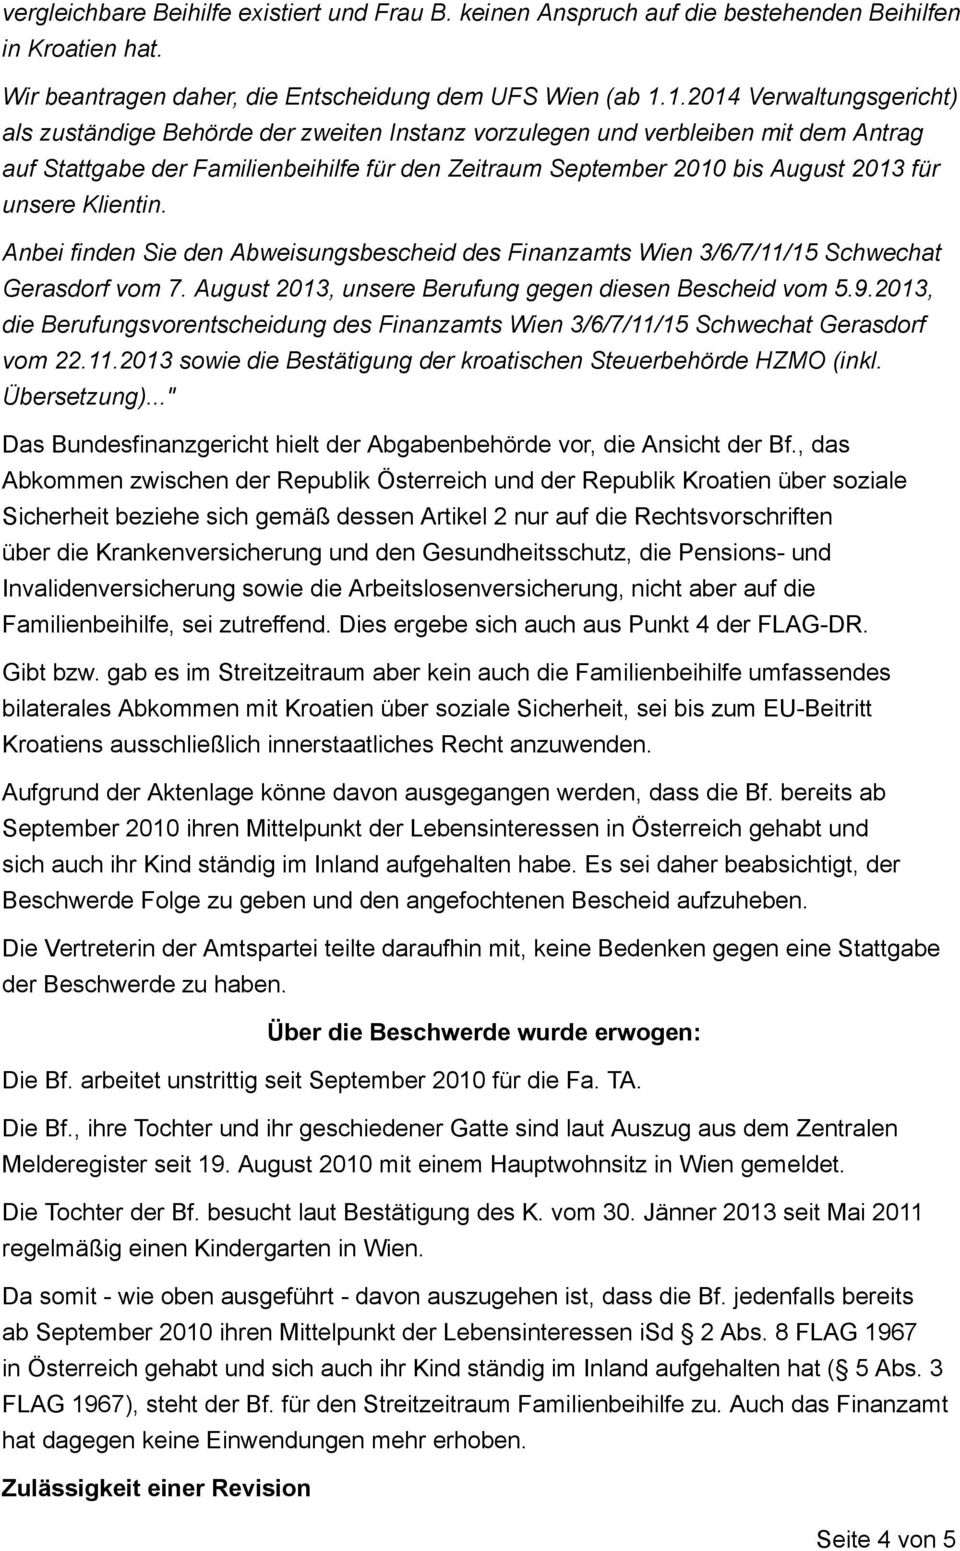 unsere Klientin. Anbei finden Sie den Abweisungsbescheid des Finanzamts Wien 3/6/7/11/15 Schwechat Gerasdorf vom 7. August 2013, unsere Berufung gegen diesen Bescheid vom 5.9.